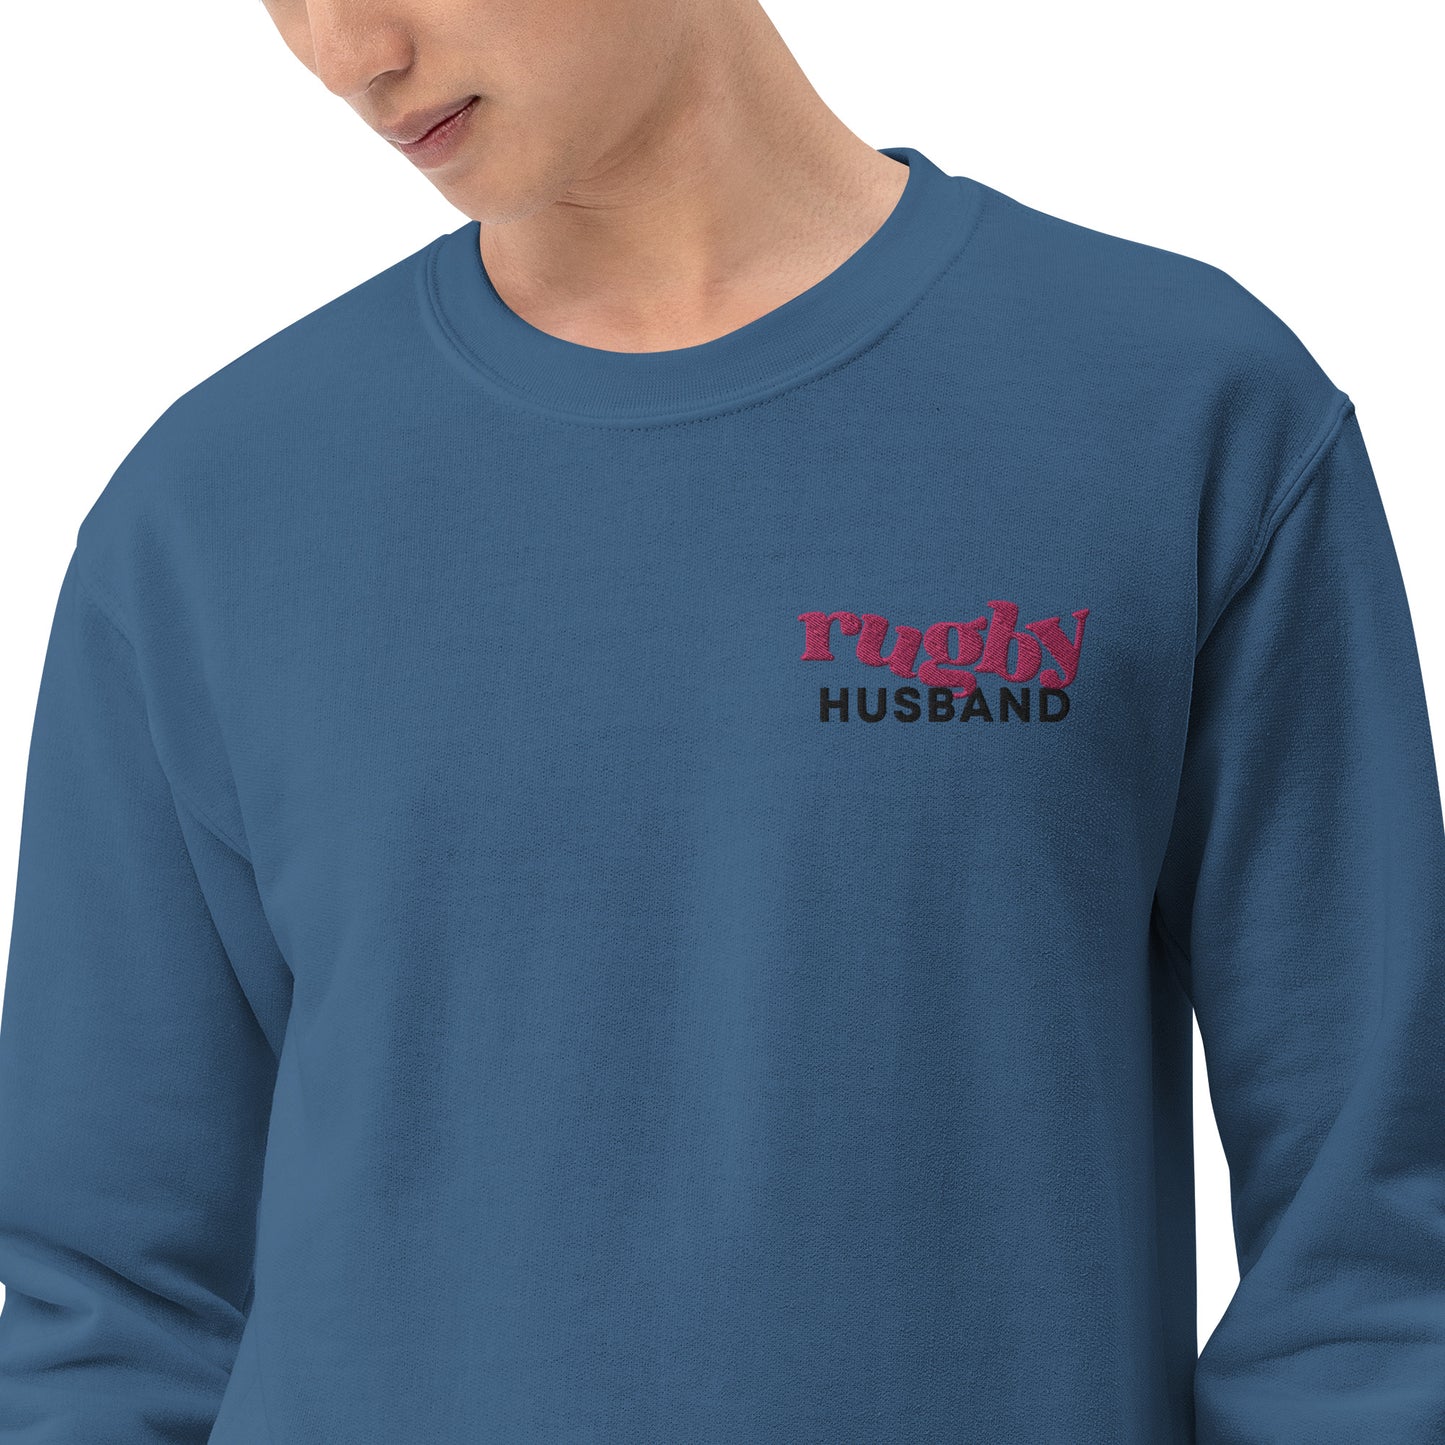 Rugby Husband Unisex Sweatshirt